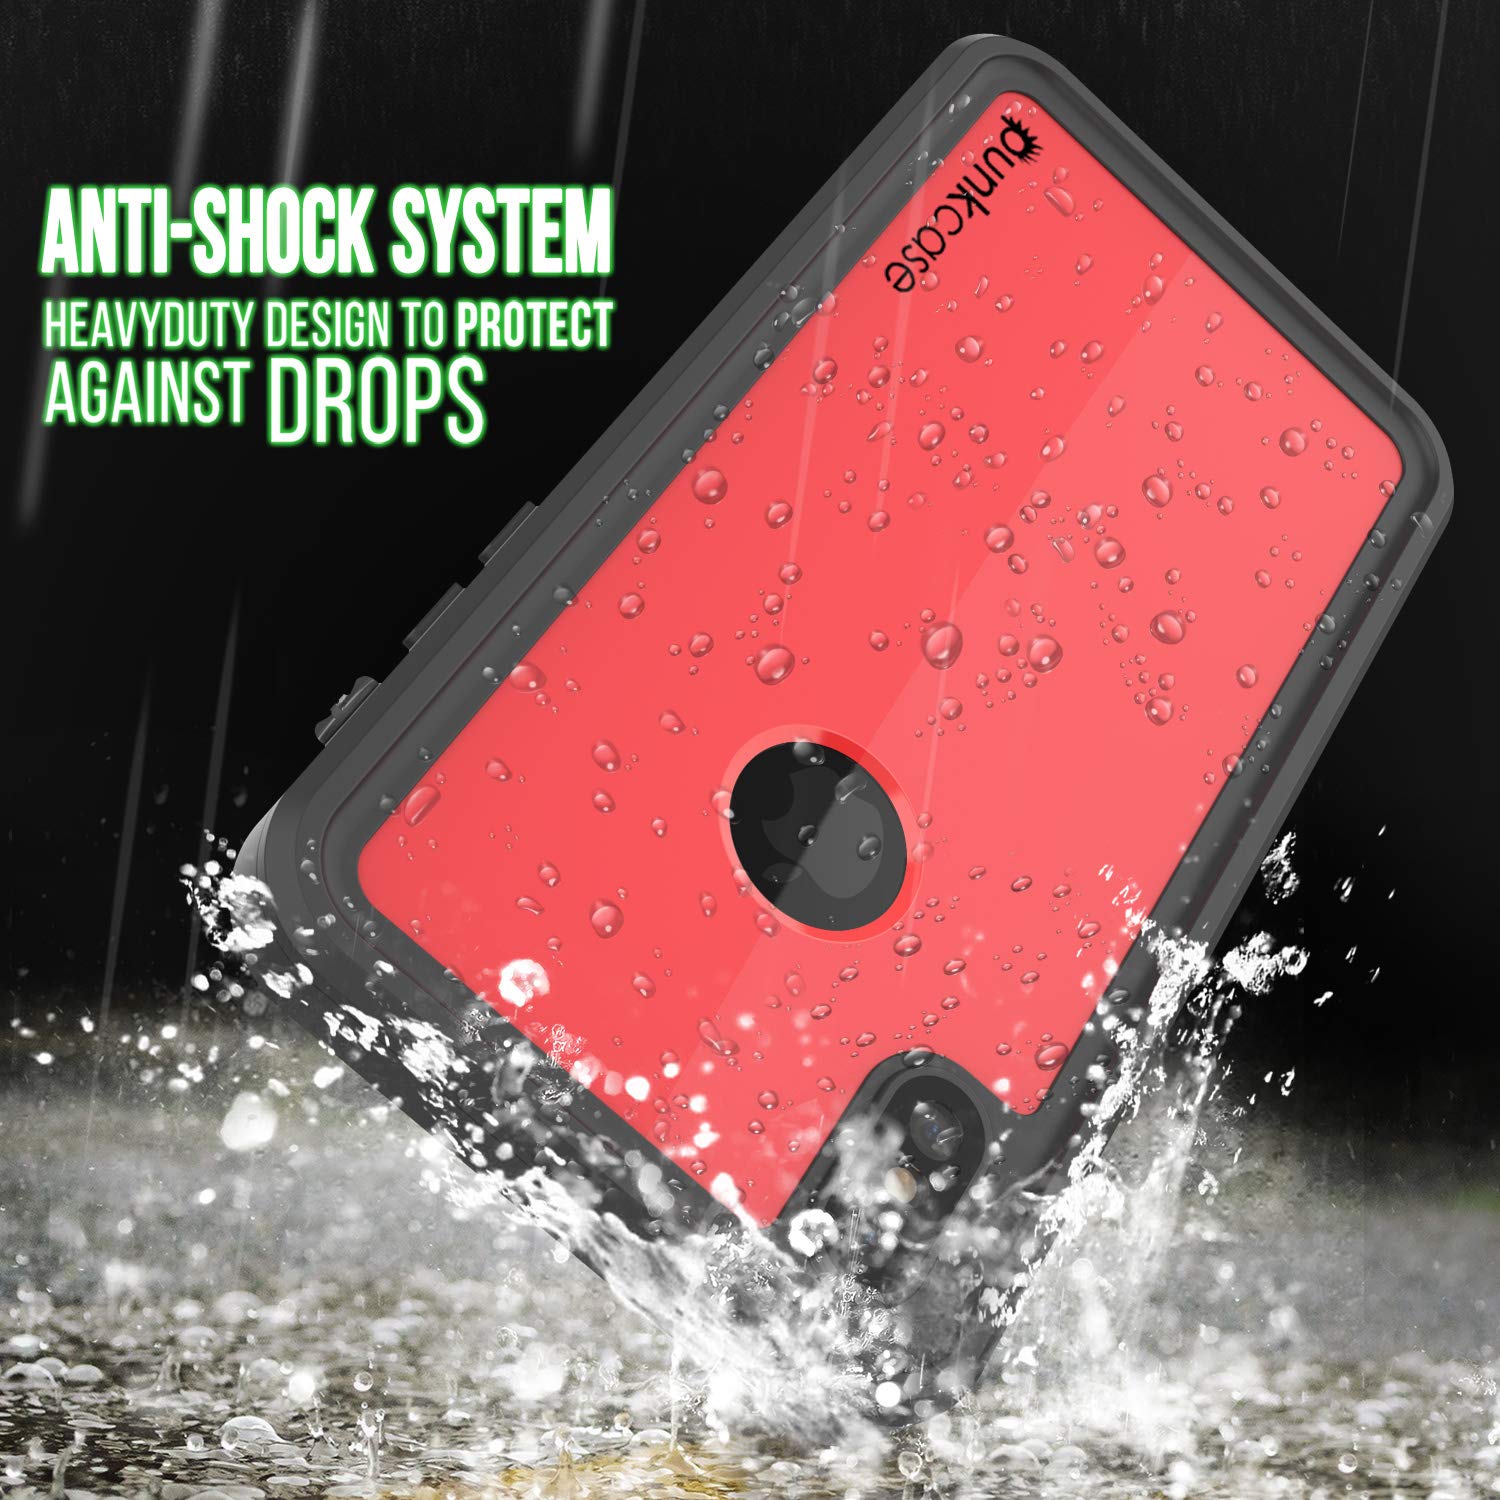 iPhone XS Max Waterproof IP68 Case, Punkcase [Red] [StudStar Series] [Slim Fit] [Dirtproof]